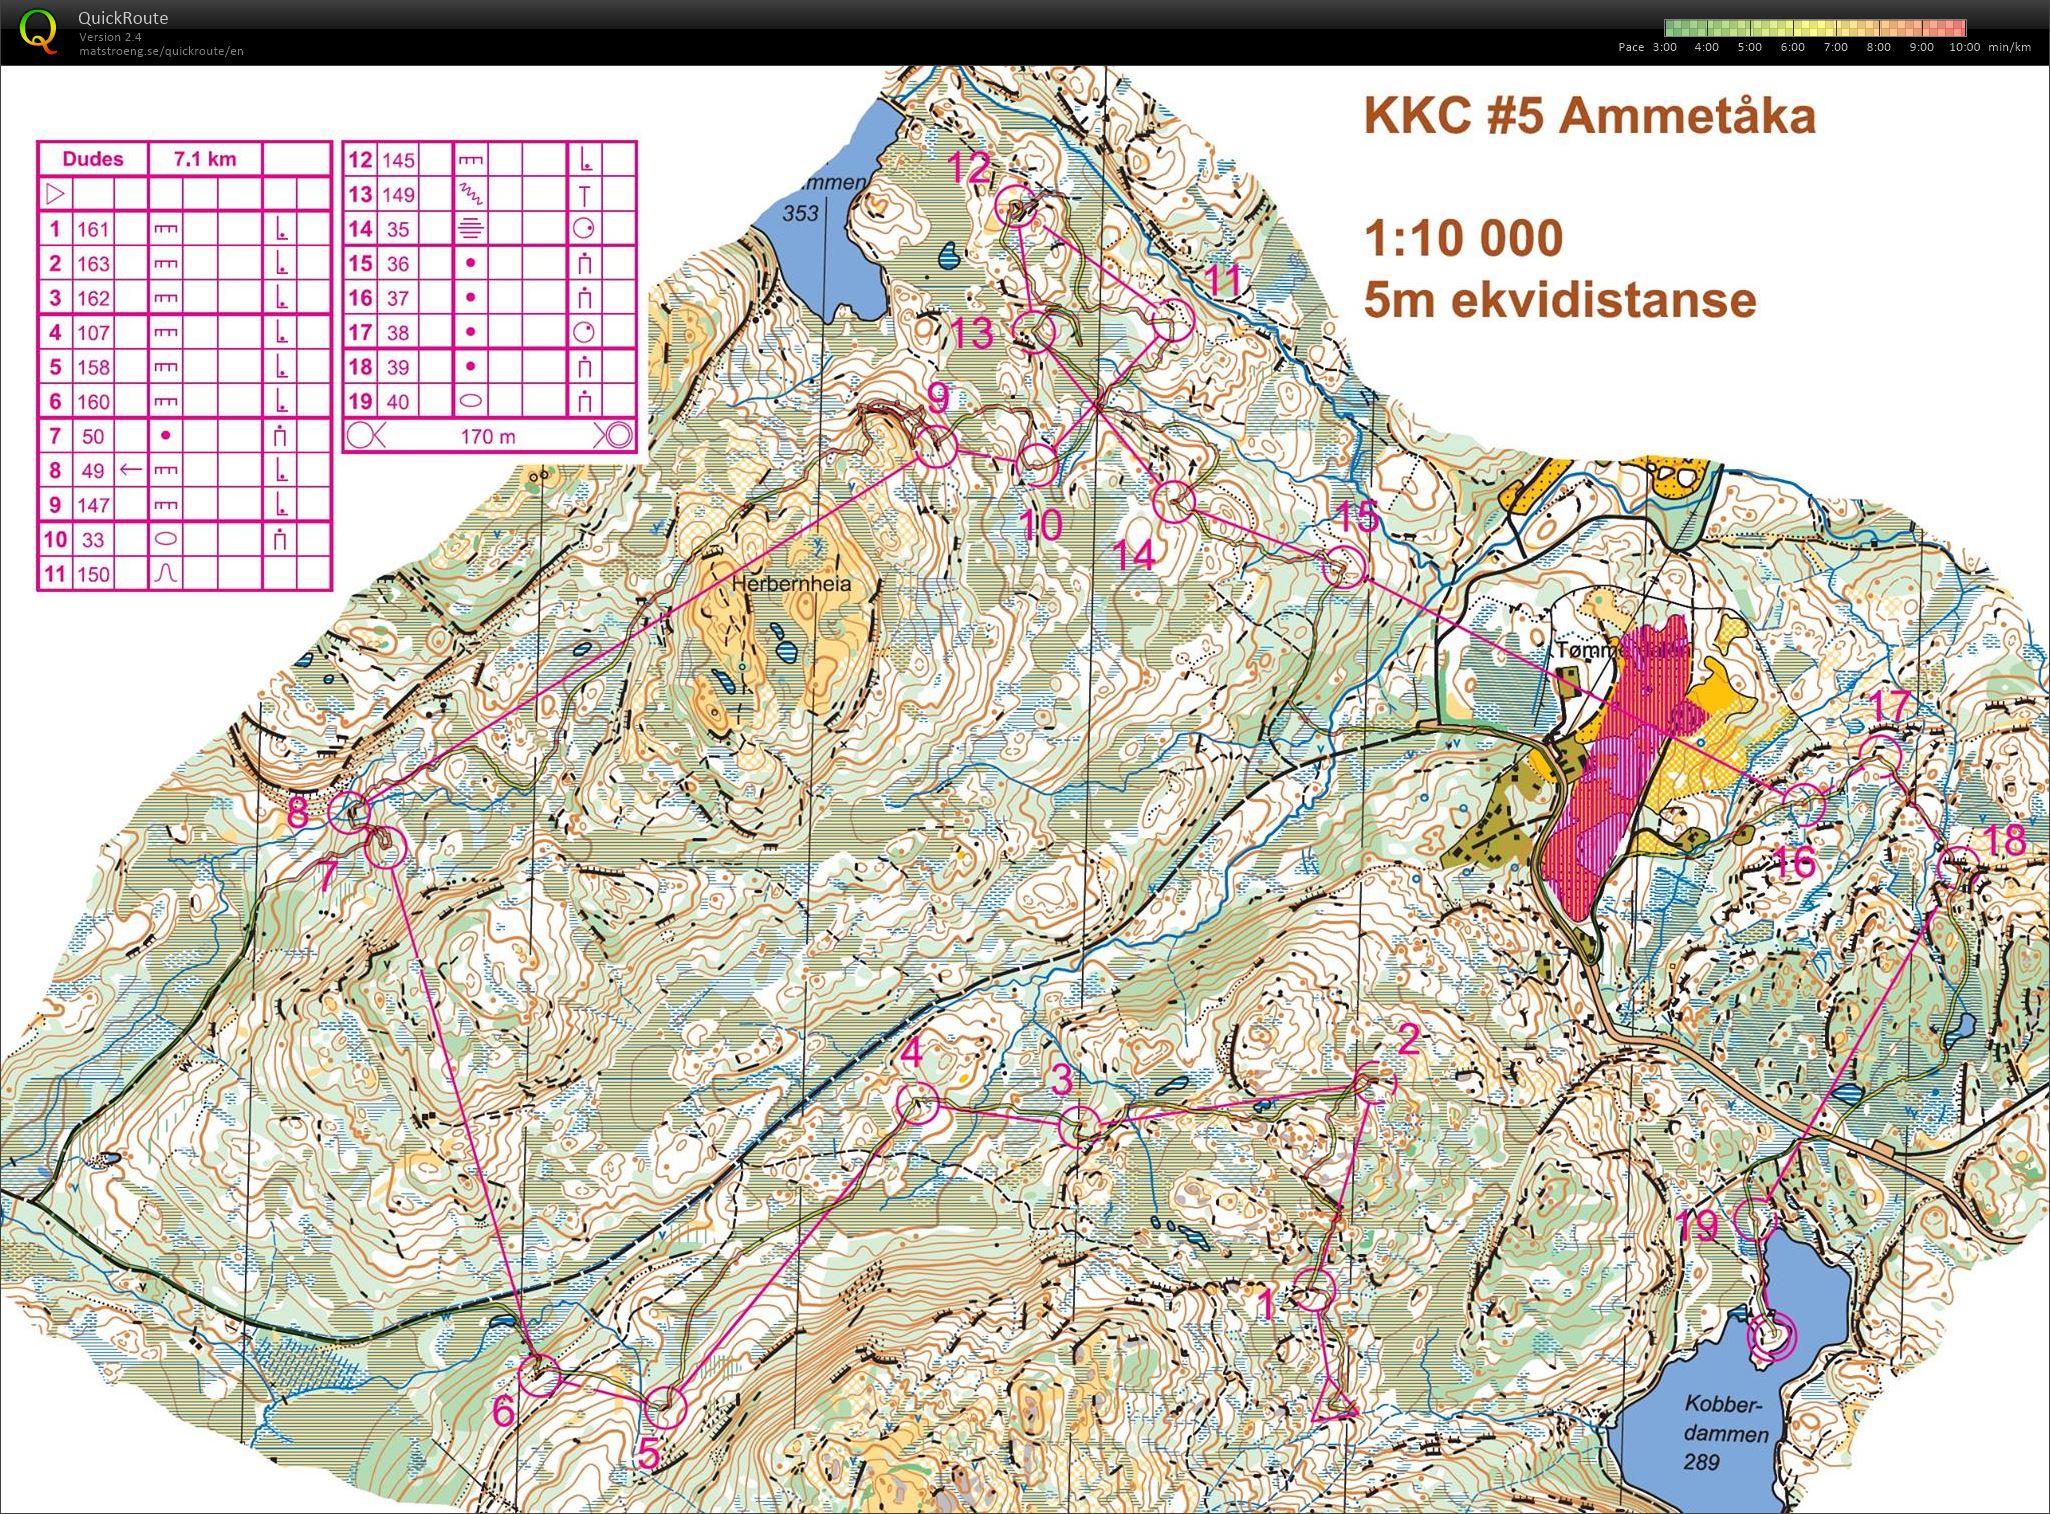 KKC #5 | Ammetåka (2017-10-26)